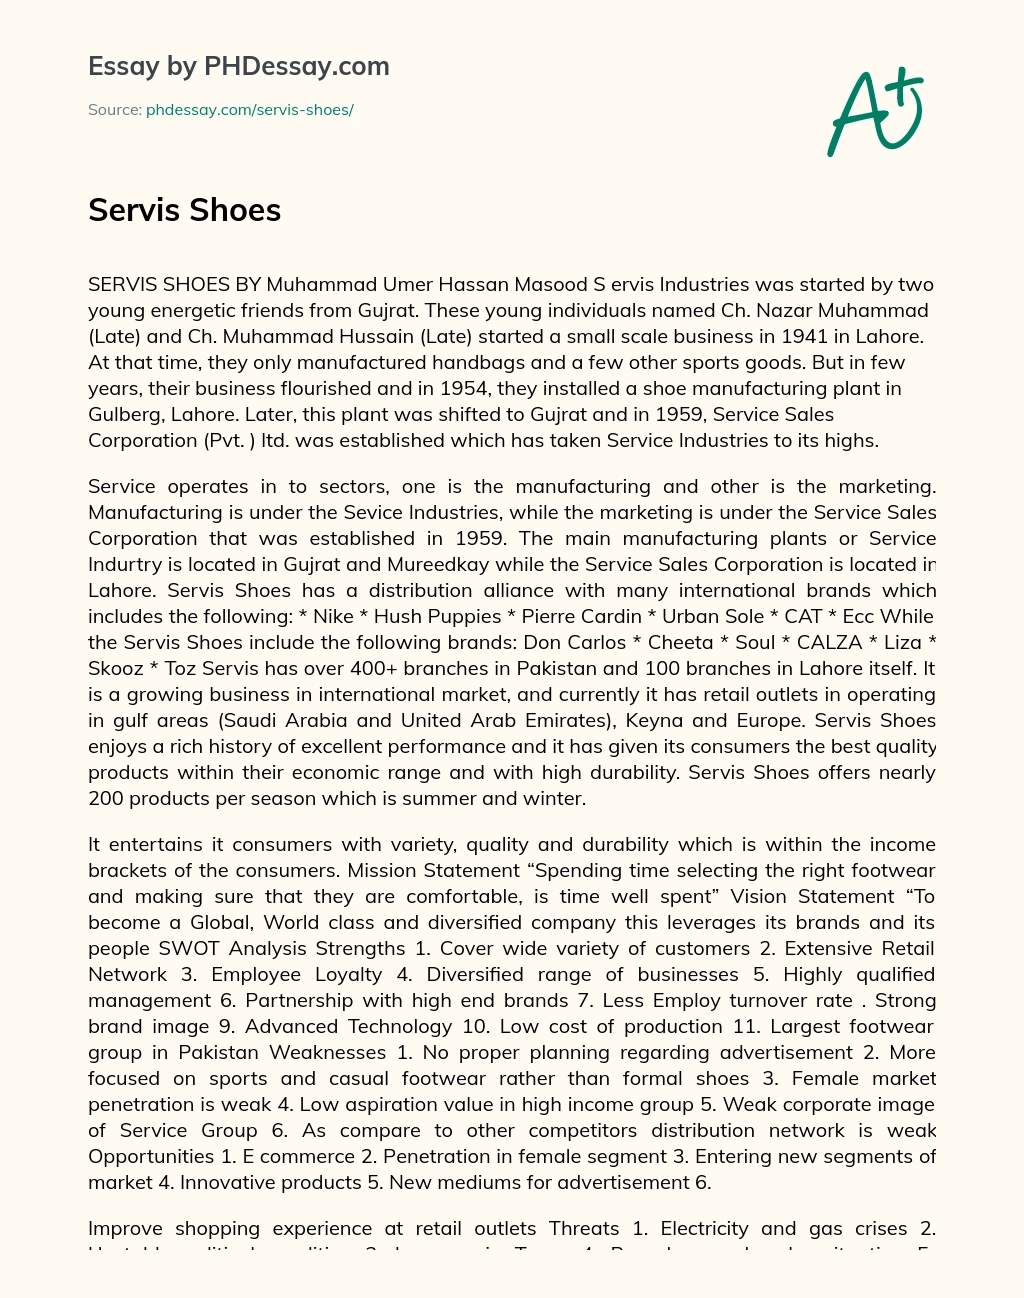 Servis Shoes essay